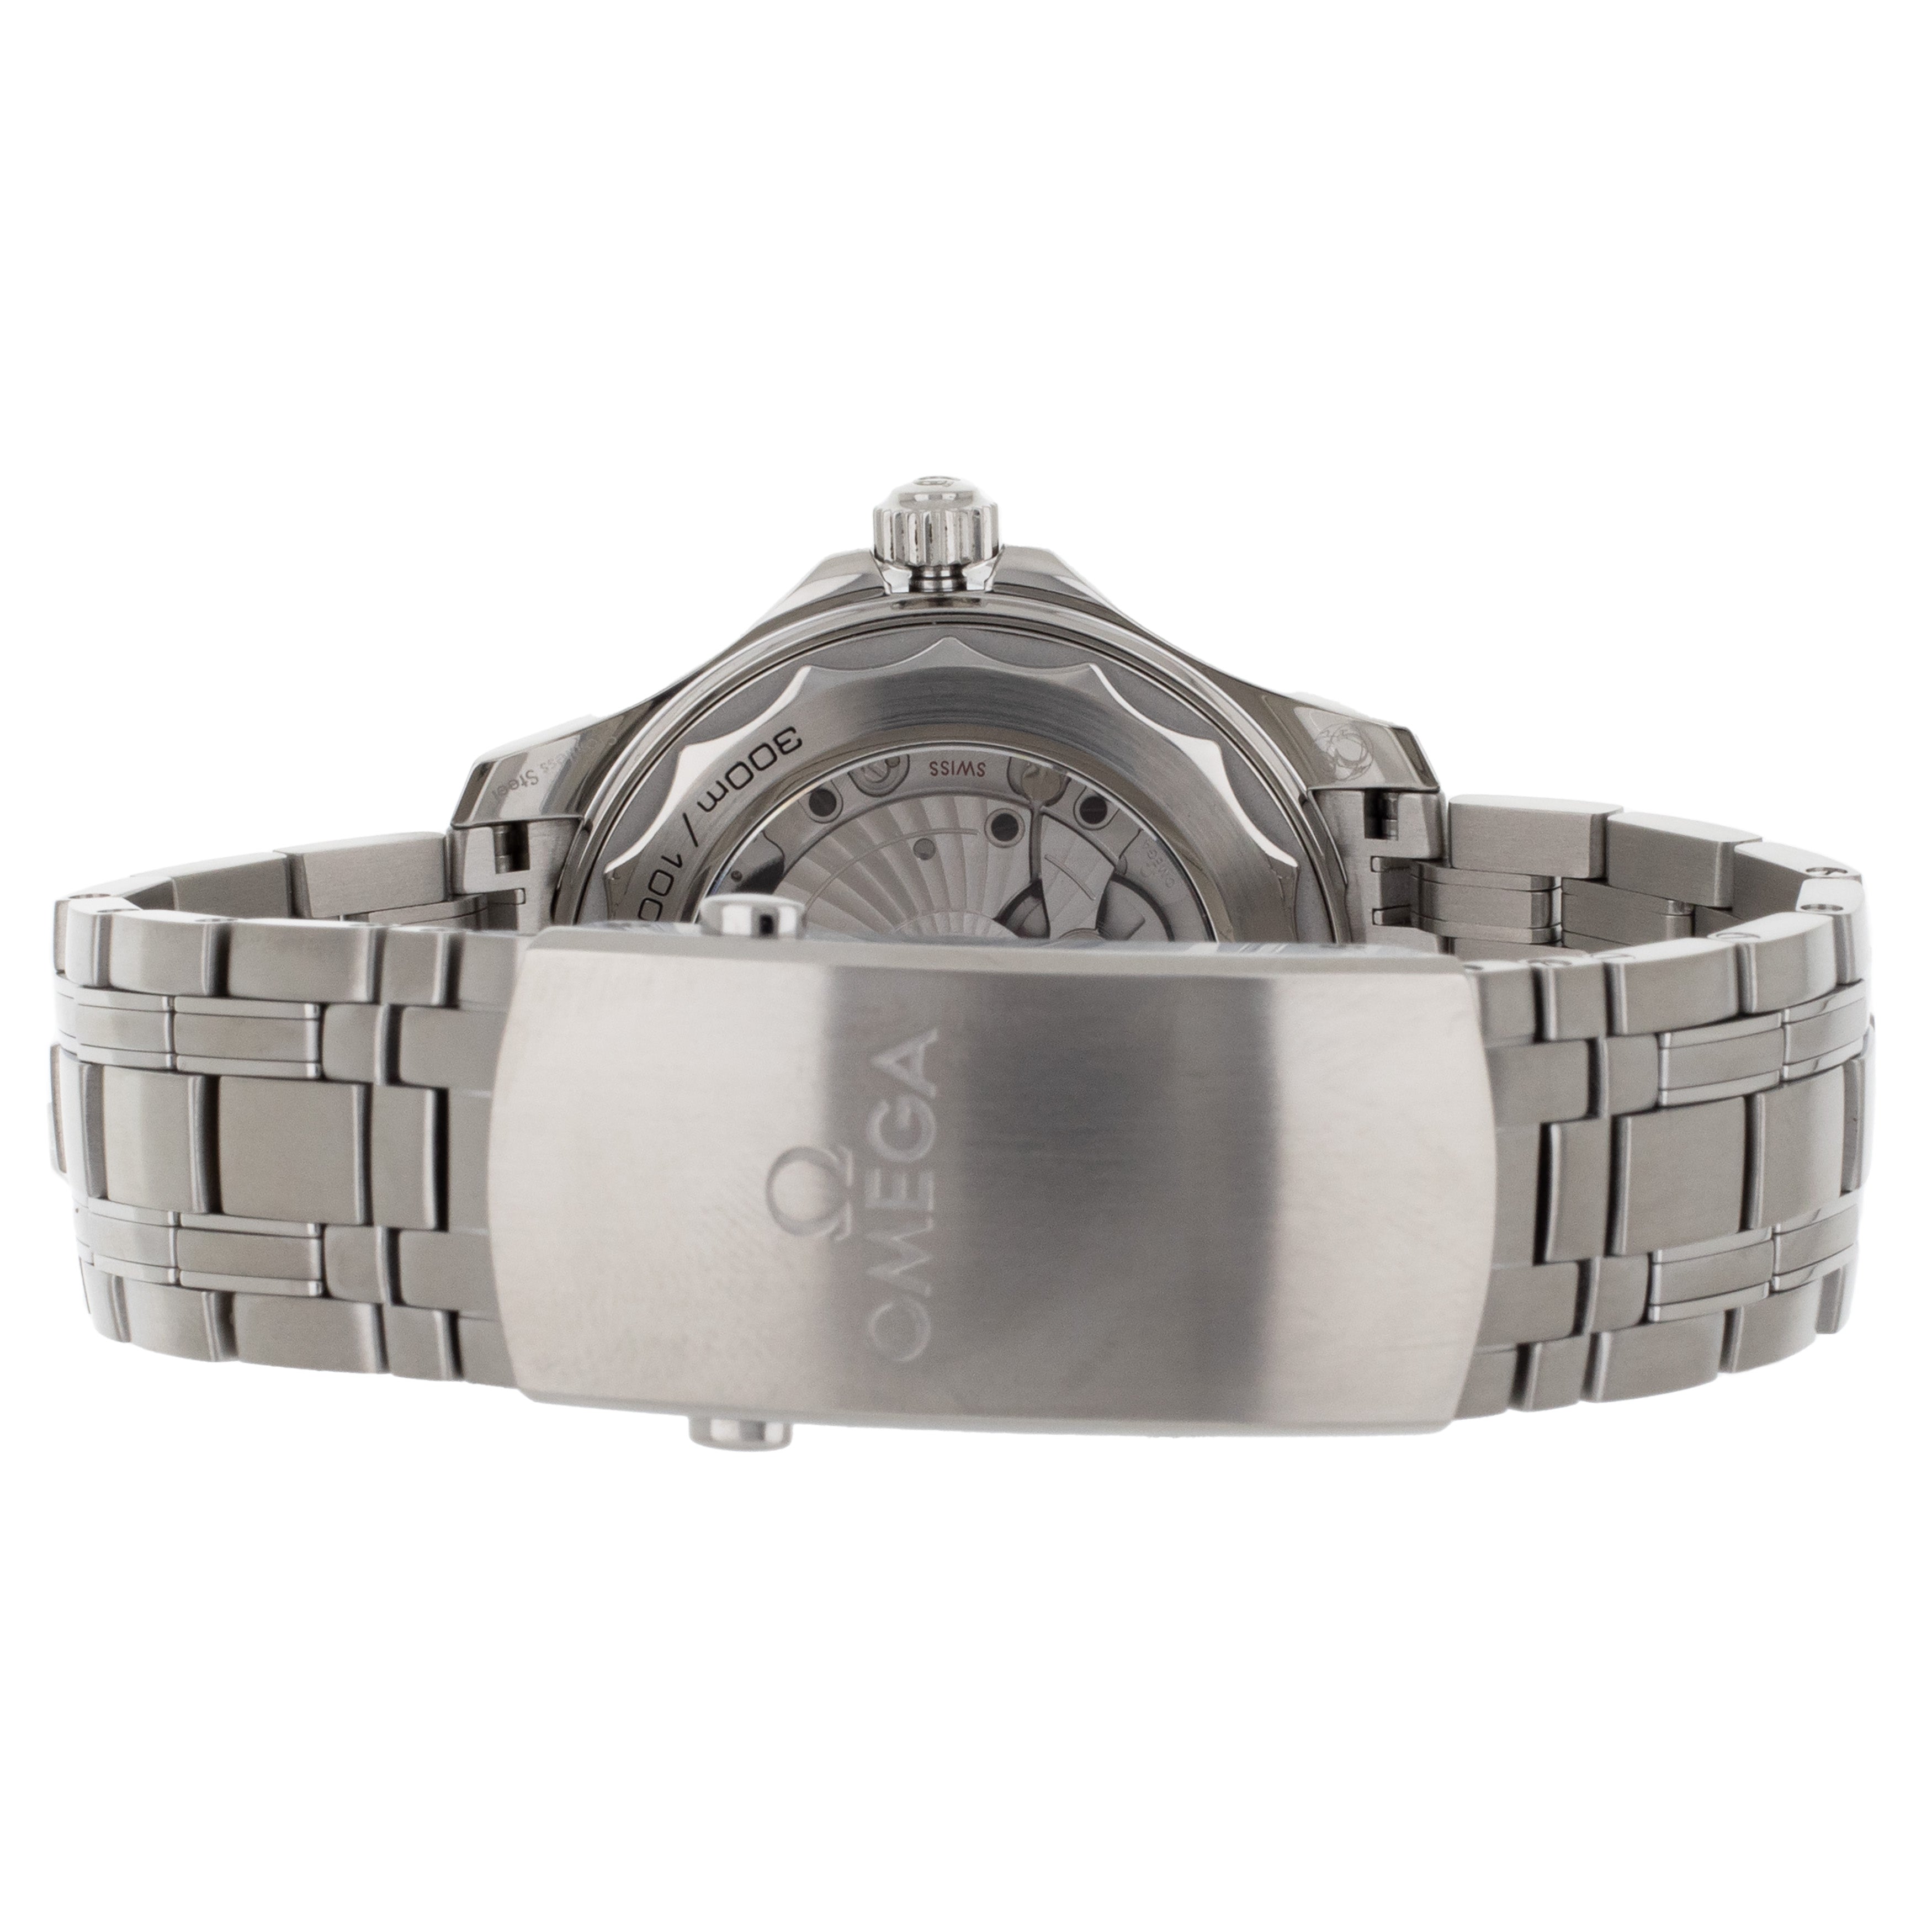 Omega Seamaster 300m Stainless Steel Bracelet Gray Dial 21030422006001 Full Set